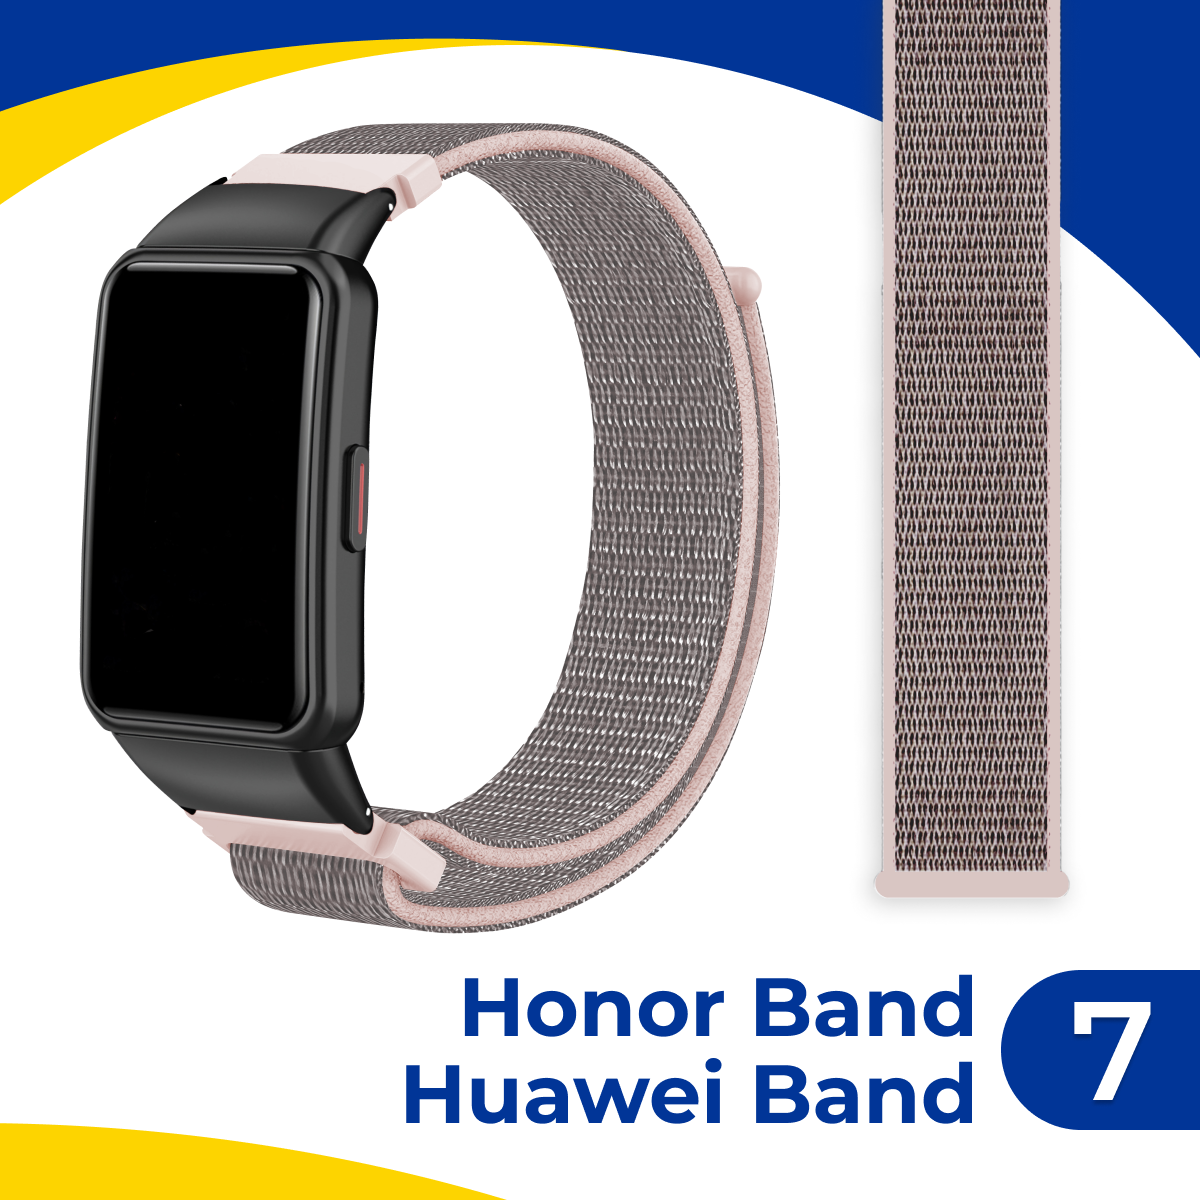 Нейлоновый ремешок для фитнес-браслета Huawei Band 7 и Honor Band 7 / Тканевый браслет на смарт часы Хуавей Бэнд 7 и Хонор Бэнд 7 / Кремовый